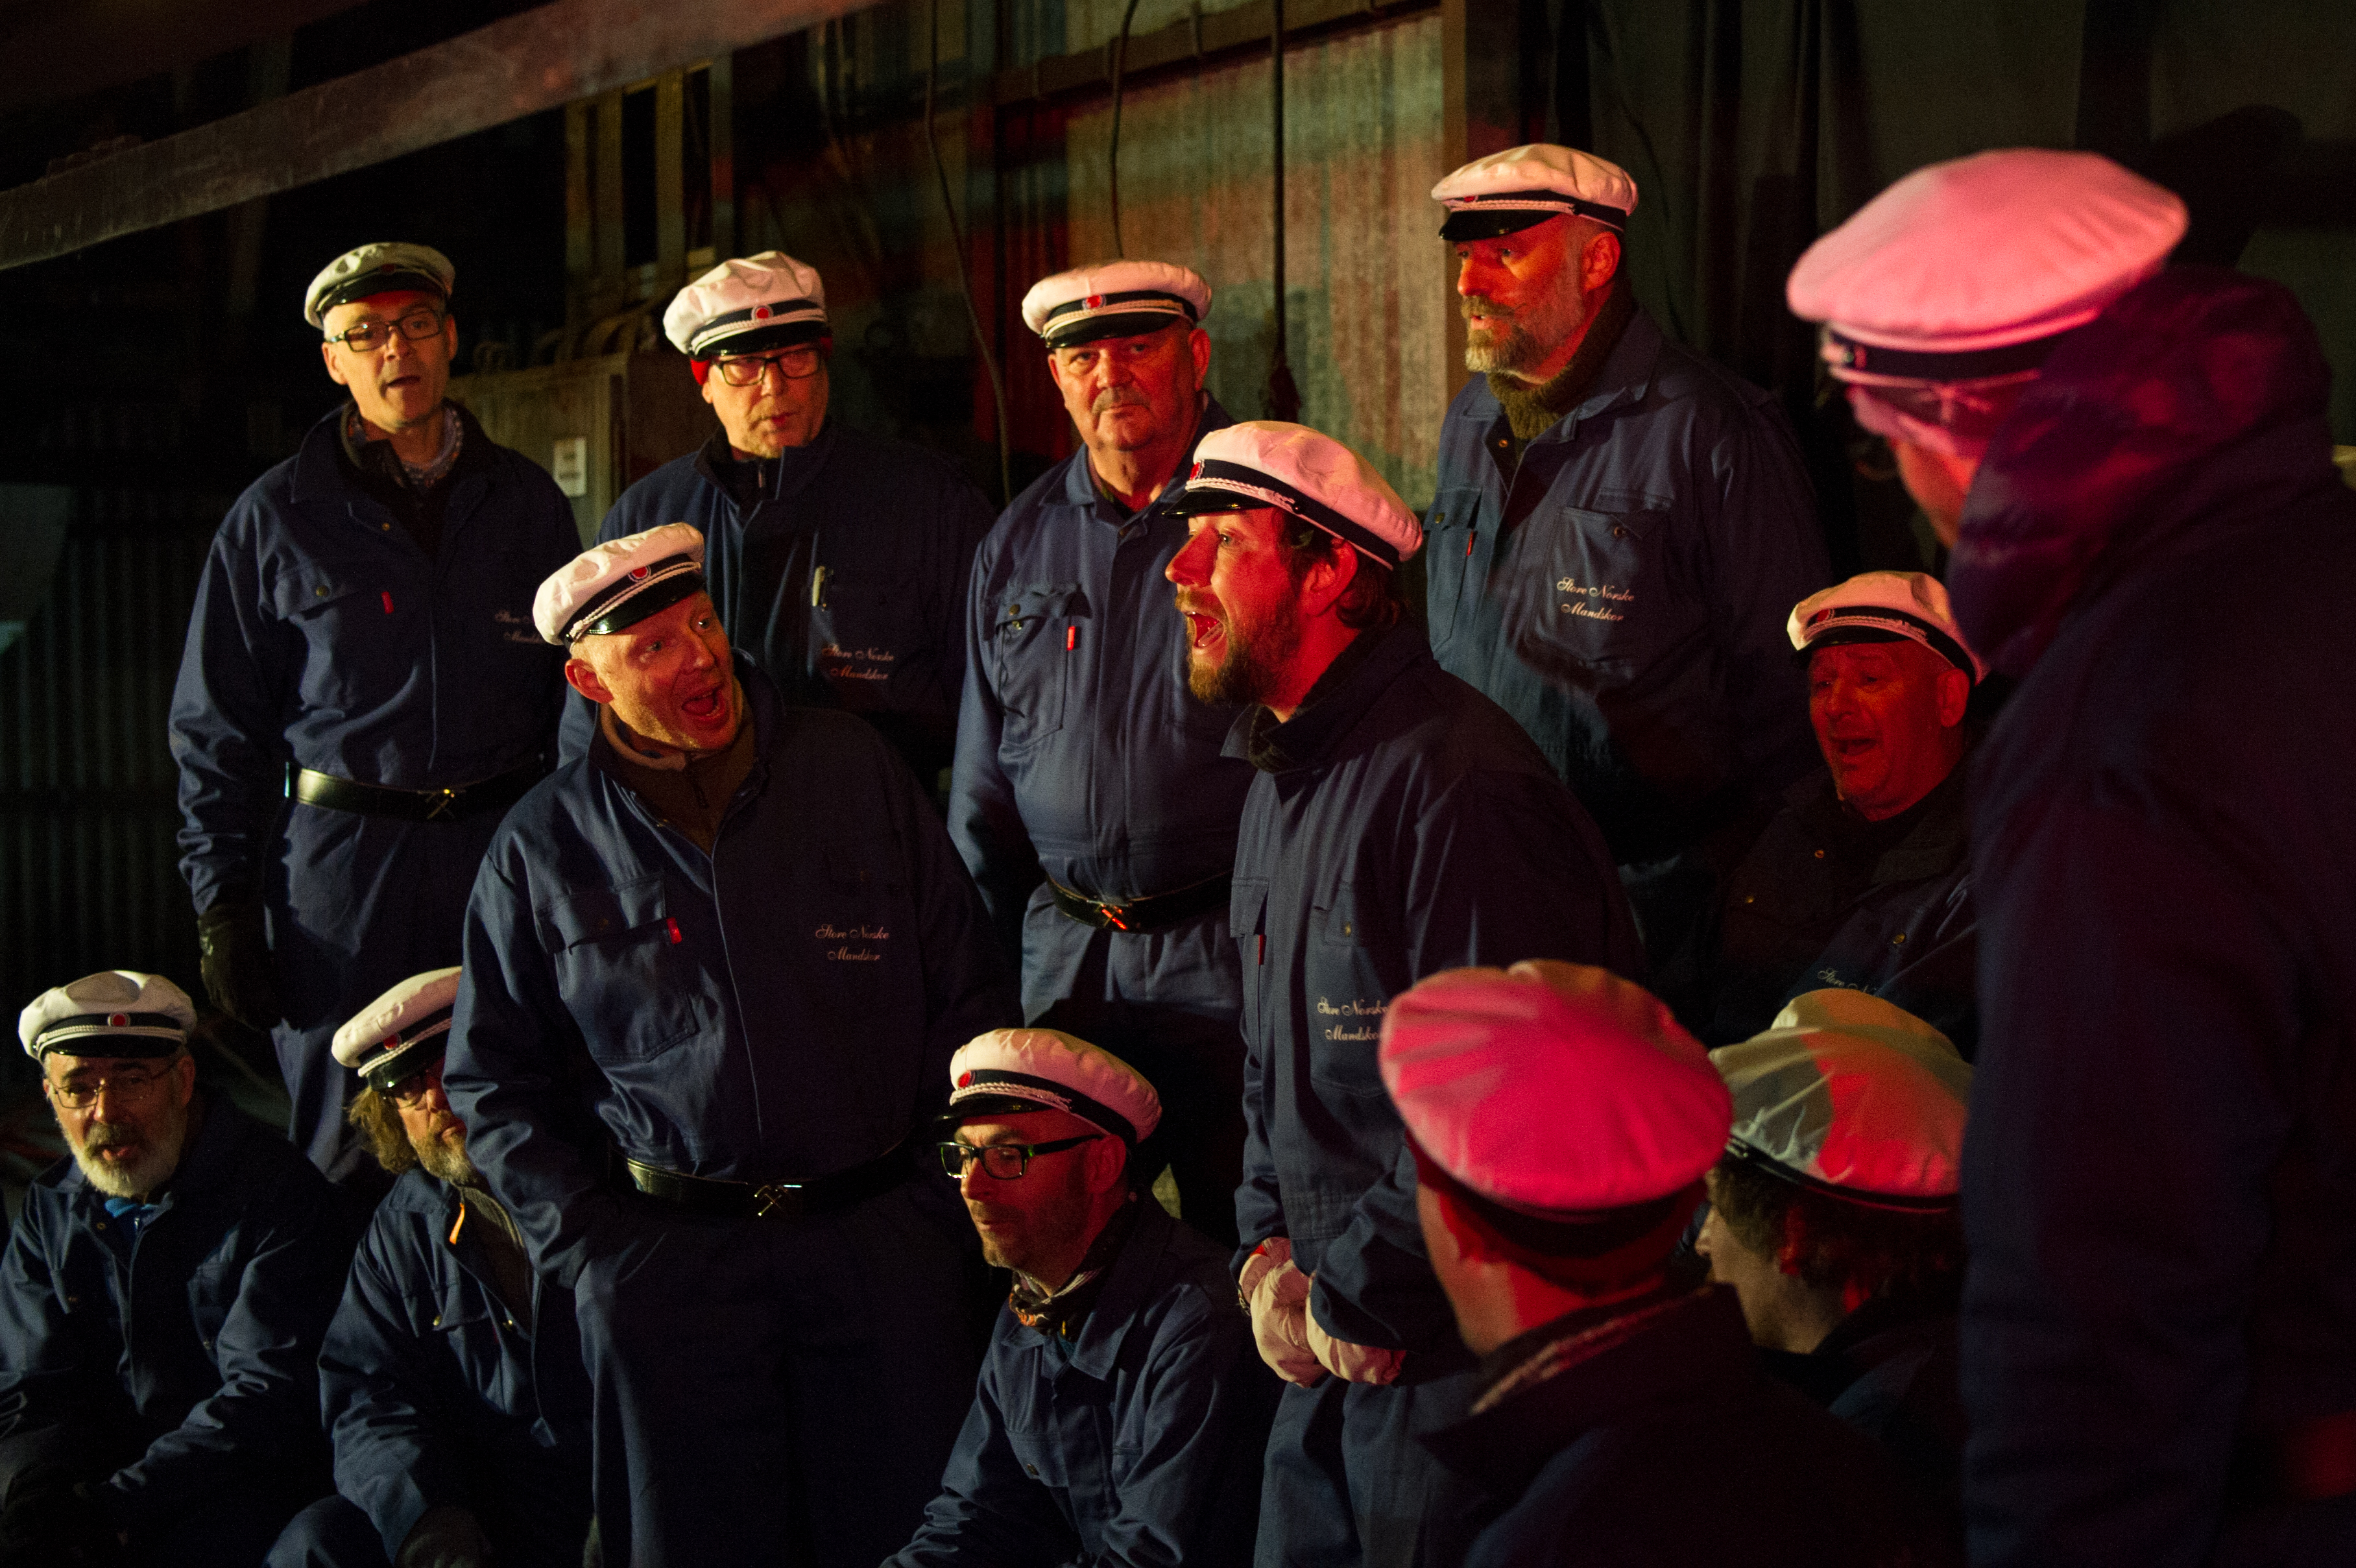 The Store Norske Men's Choir of Longyearbyen.